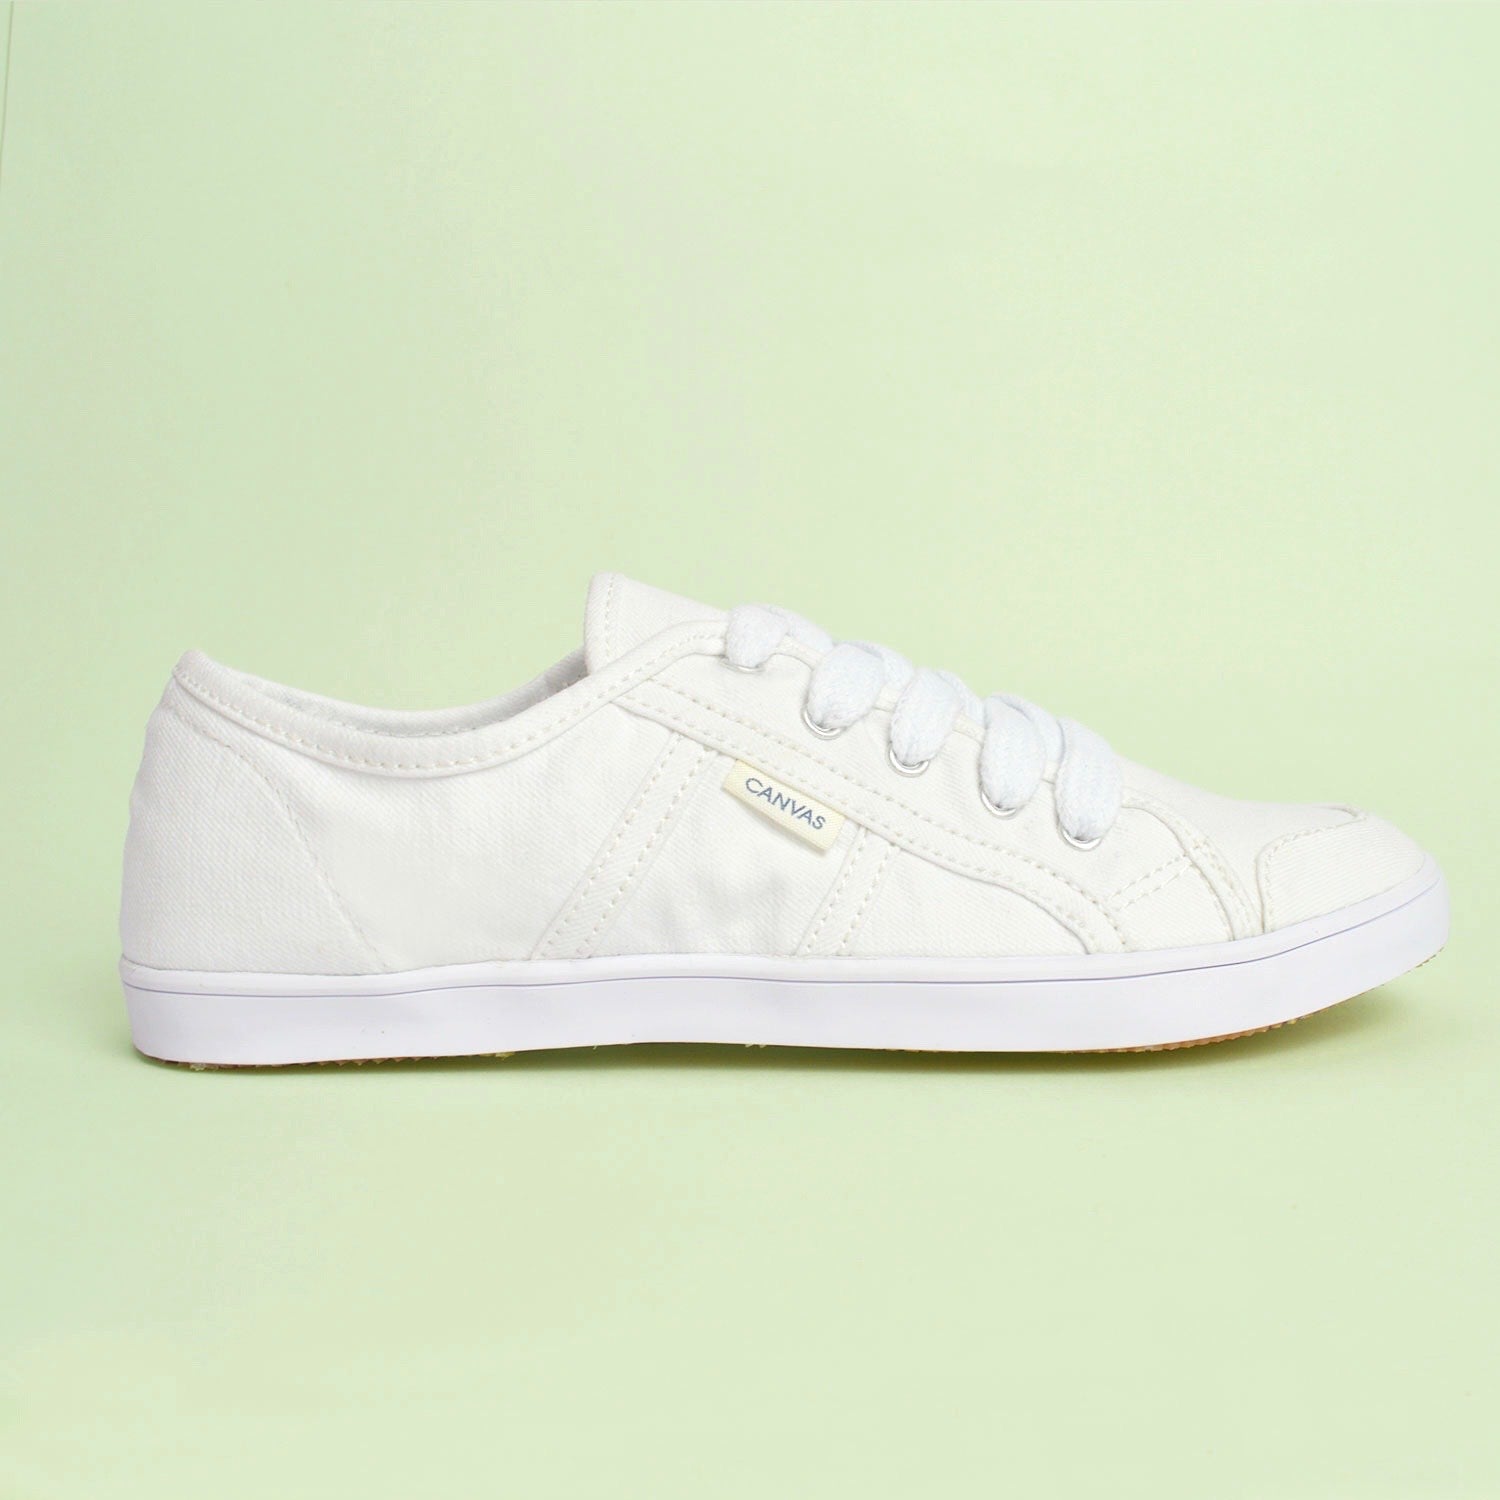 Imagen del producto Urban Lona Blanco. Vista lateral ampliada del zapato derecho.